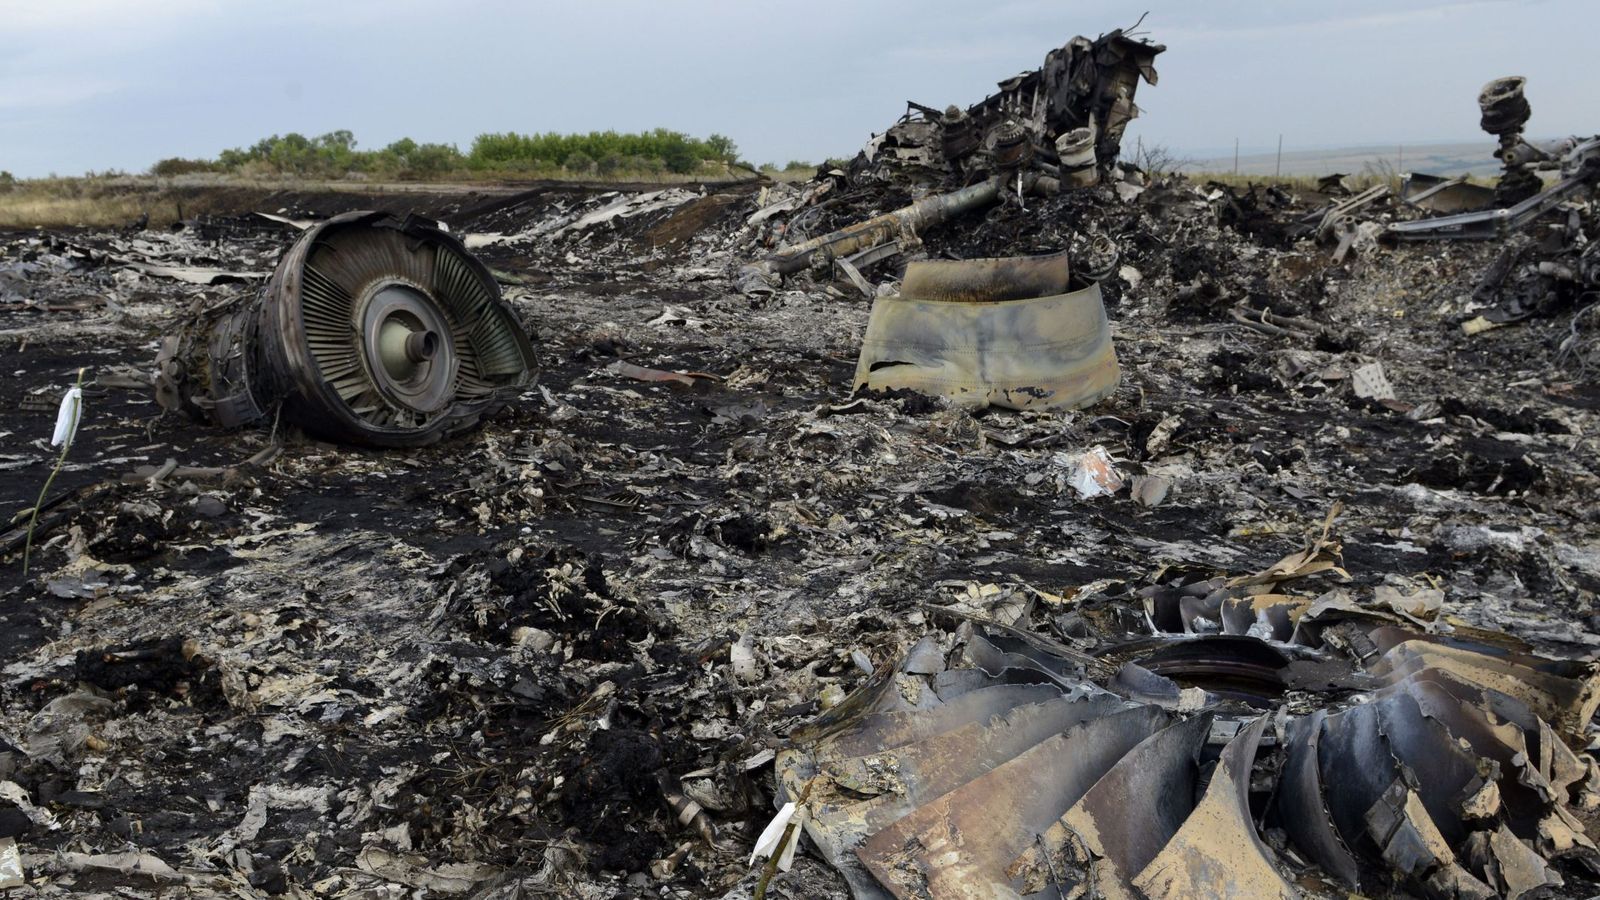 ЗМІ: Російські хакери втручались у поліцейську систему Нідерландів під час розслідування збиття MH17